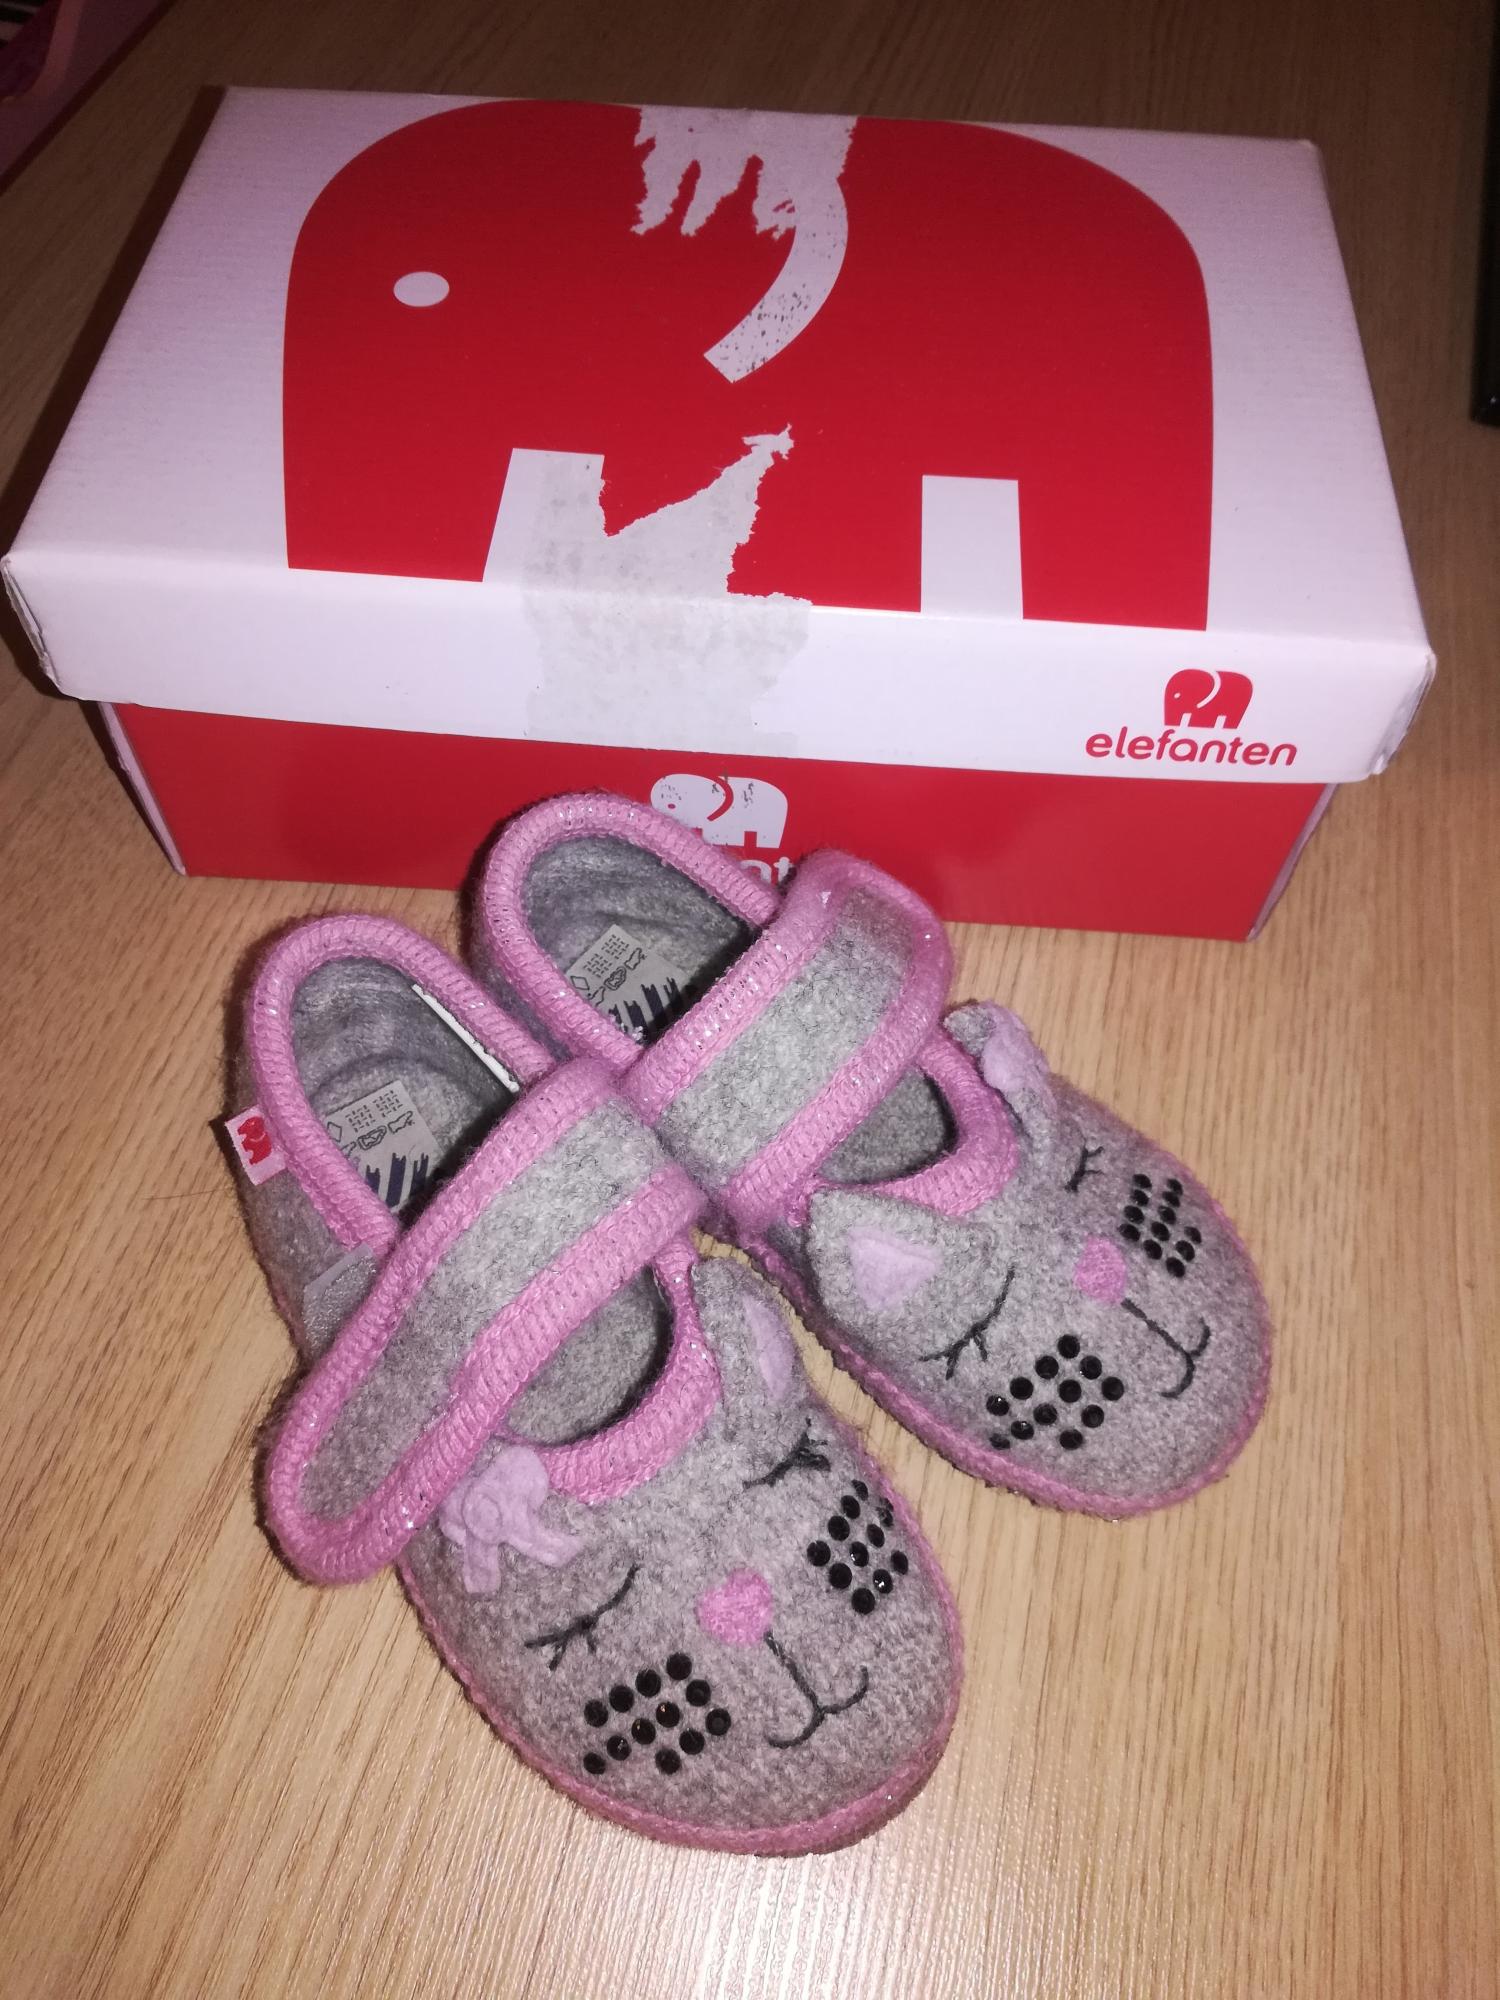 Немецкие тапочки. Elefanten детская обувь. Фирма Elefanten Германия.